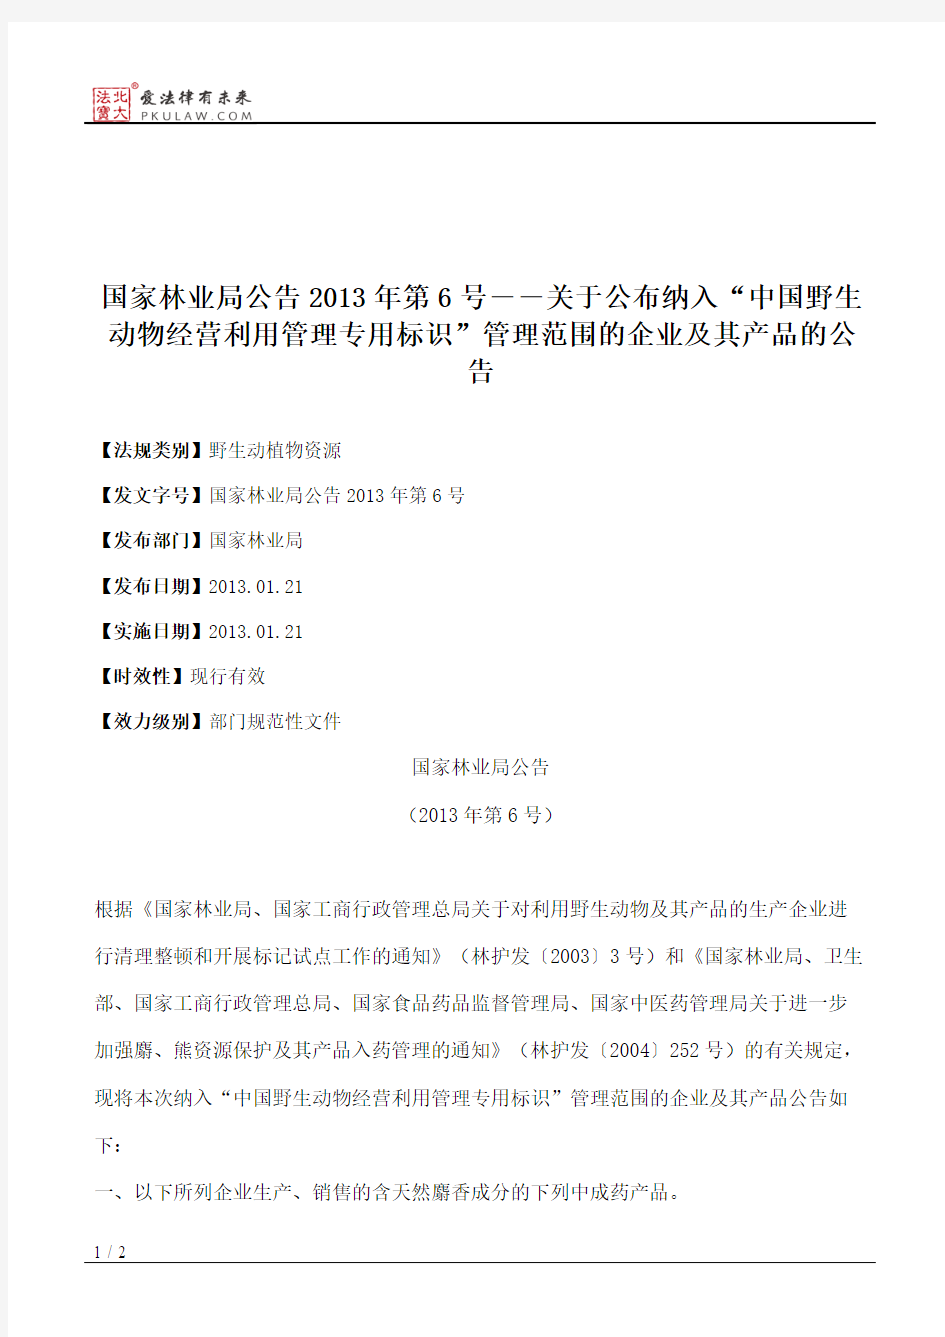 国家林业局公告2013年第6号――关于公布纳入“中国野生动物经营利